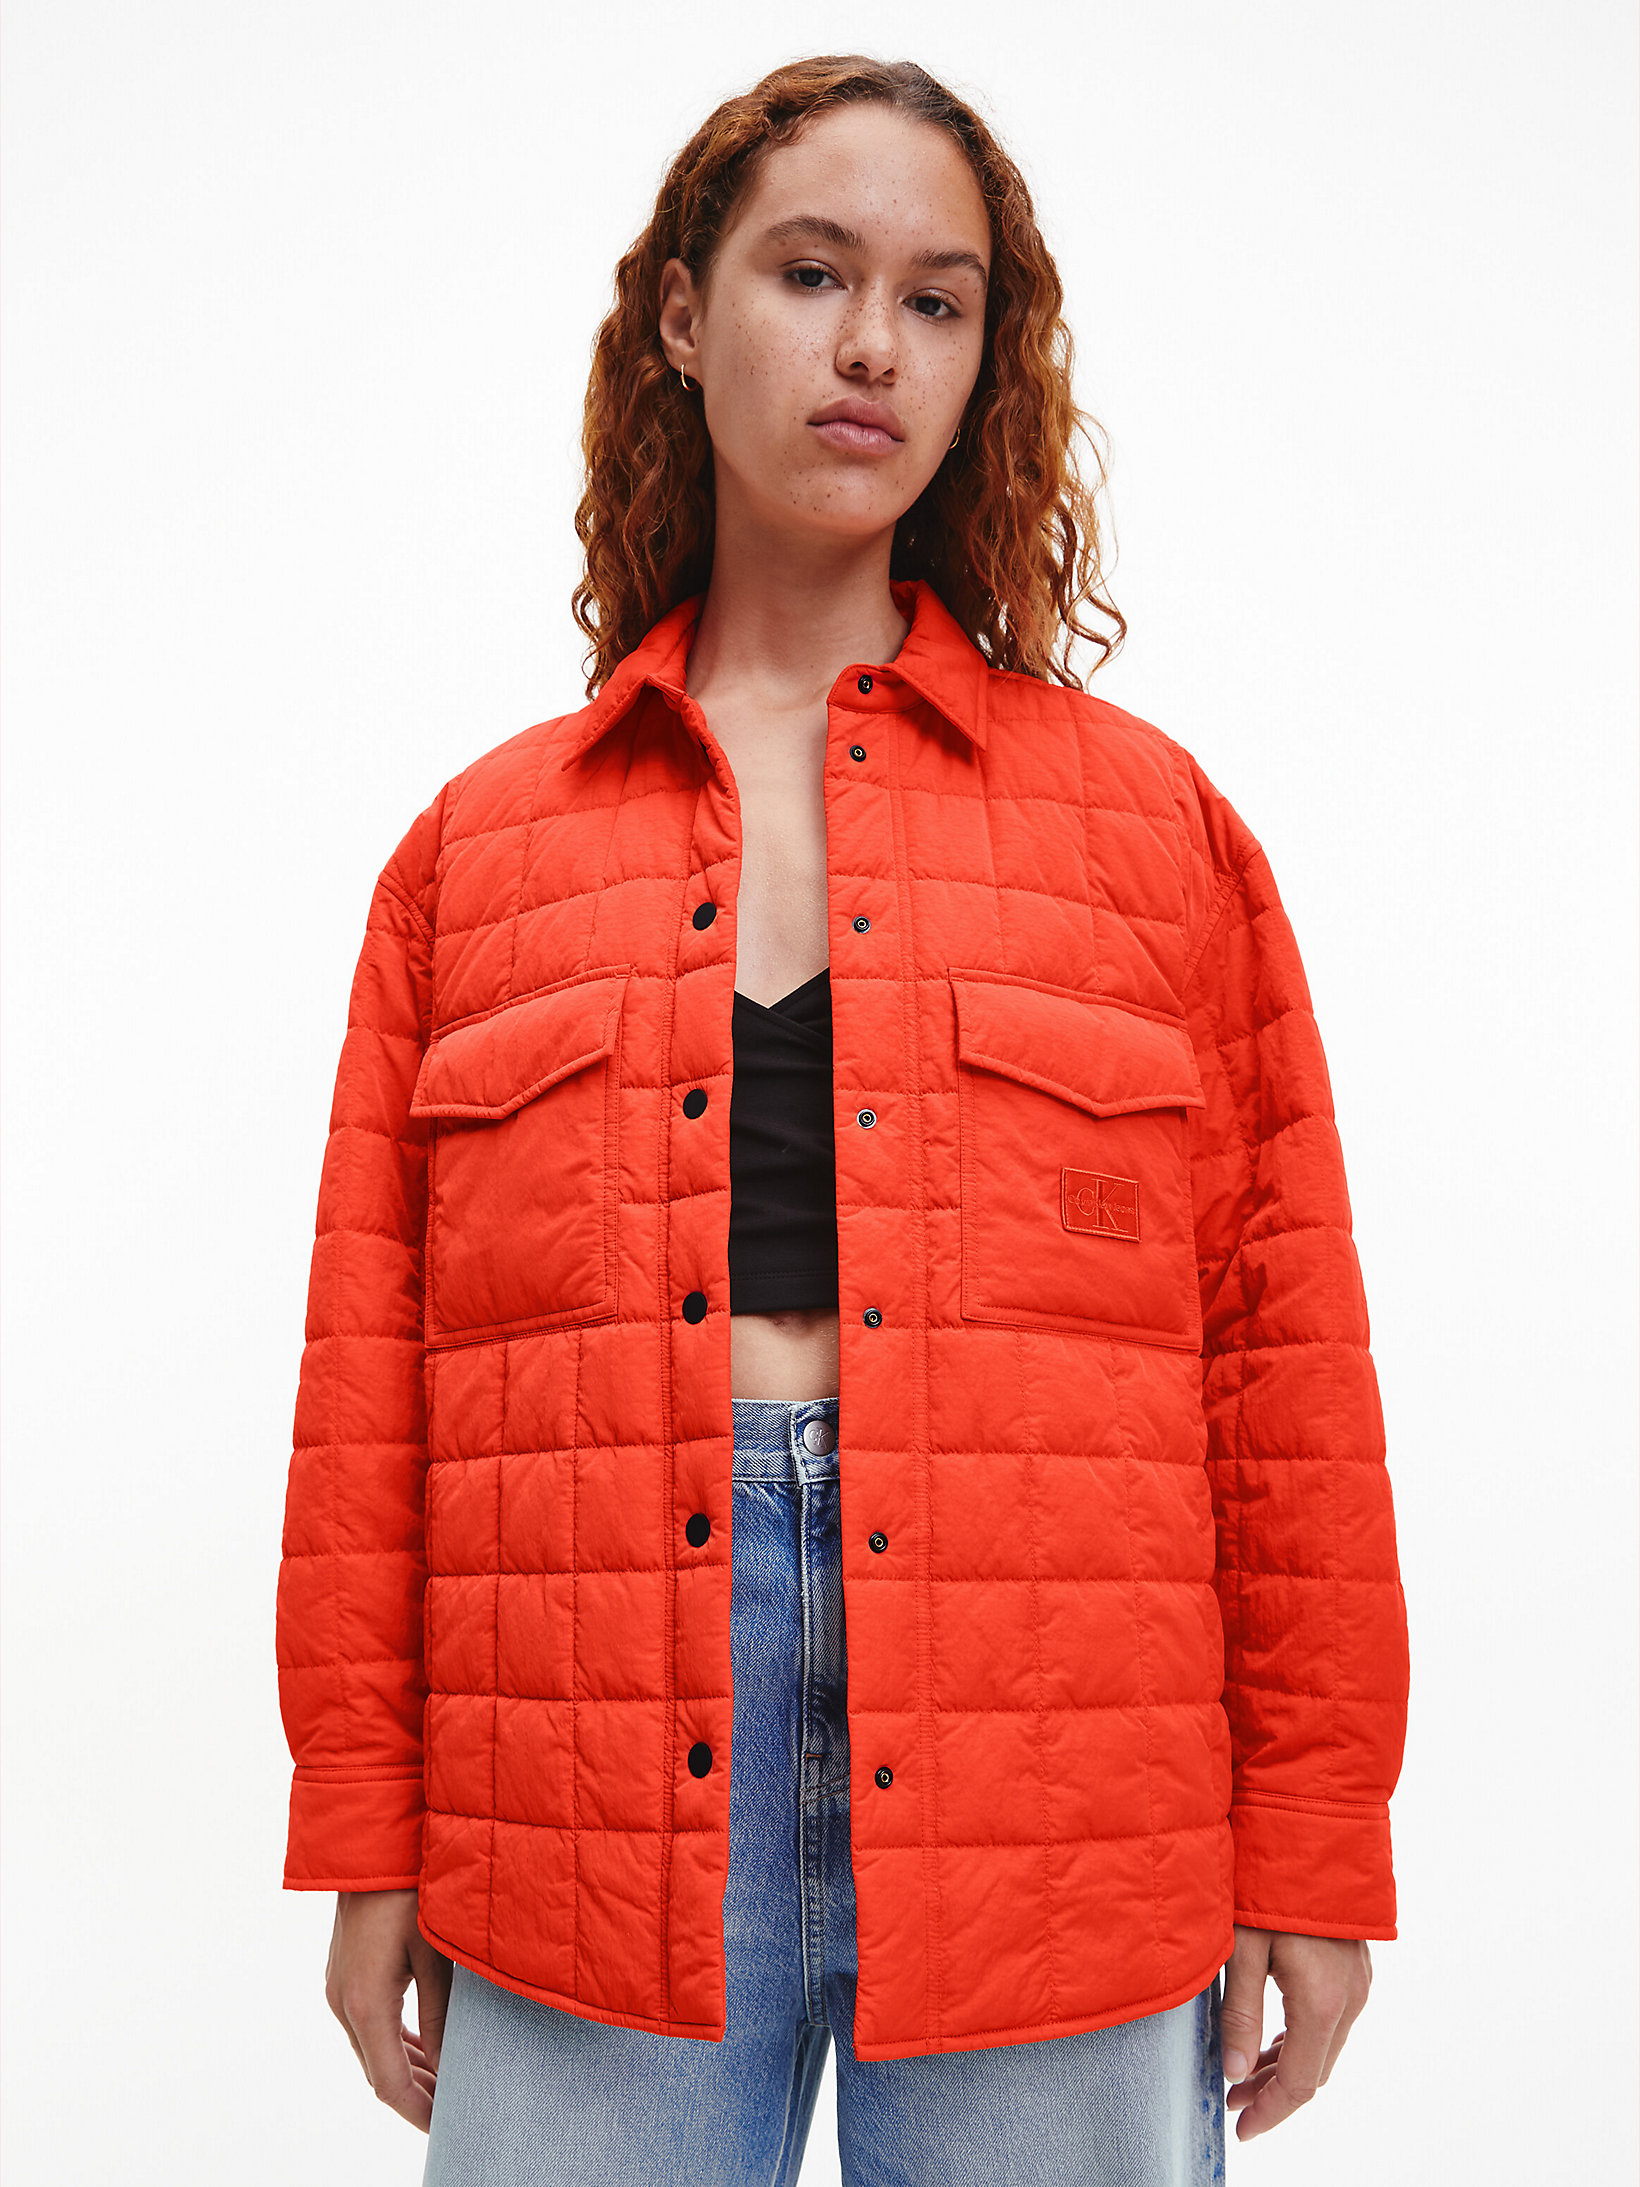 Giacca.Camicia Trapuntata In Nylon Riciclato > Coral Orange > undefined donna > Calvin Klein